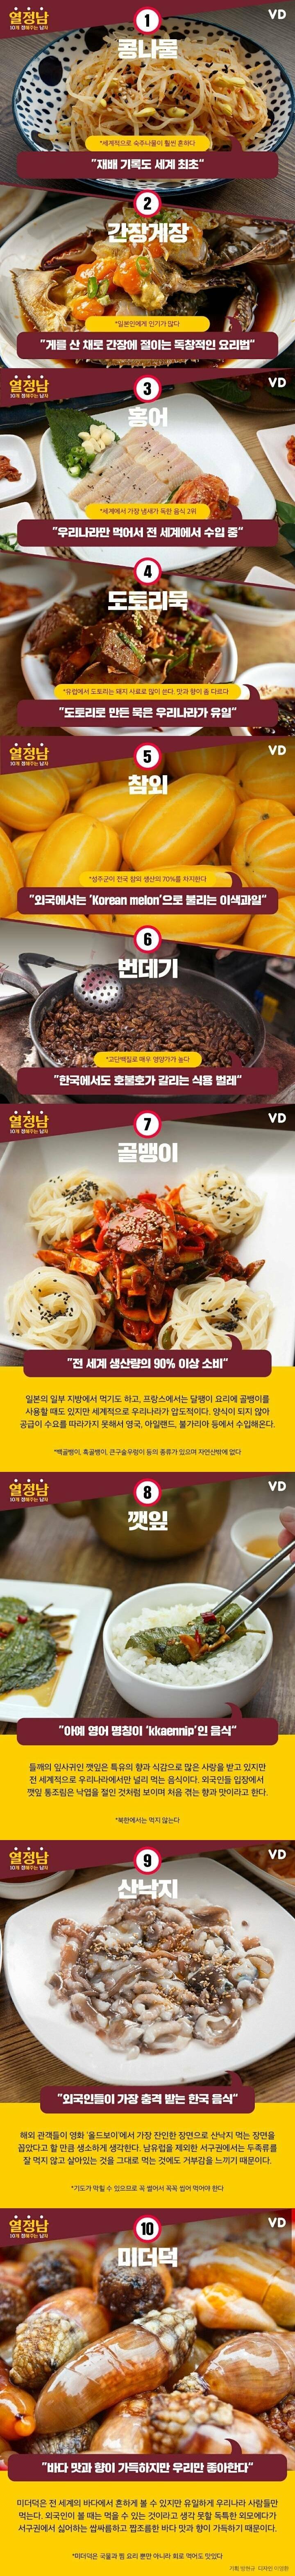 bjs51626069134_1706129699.jpg : 한국인만 먹는 음식들